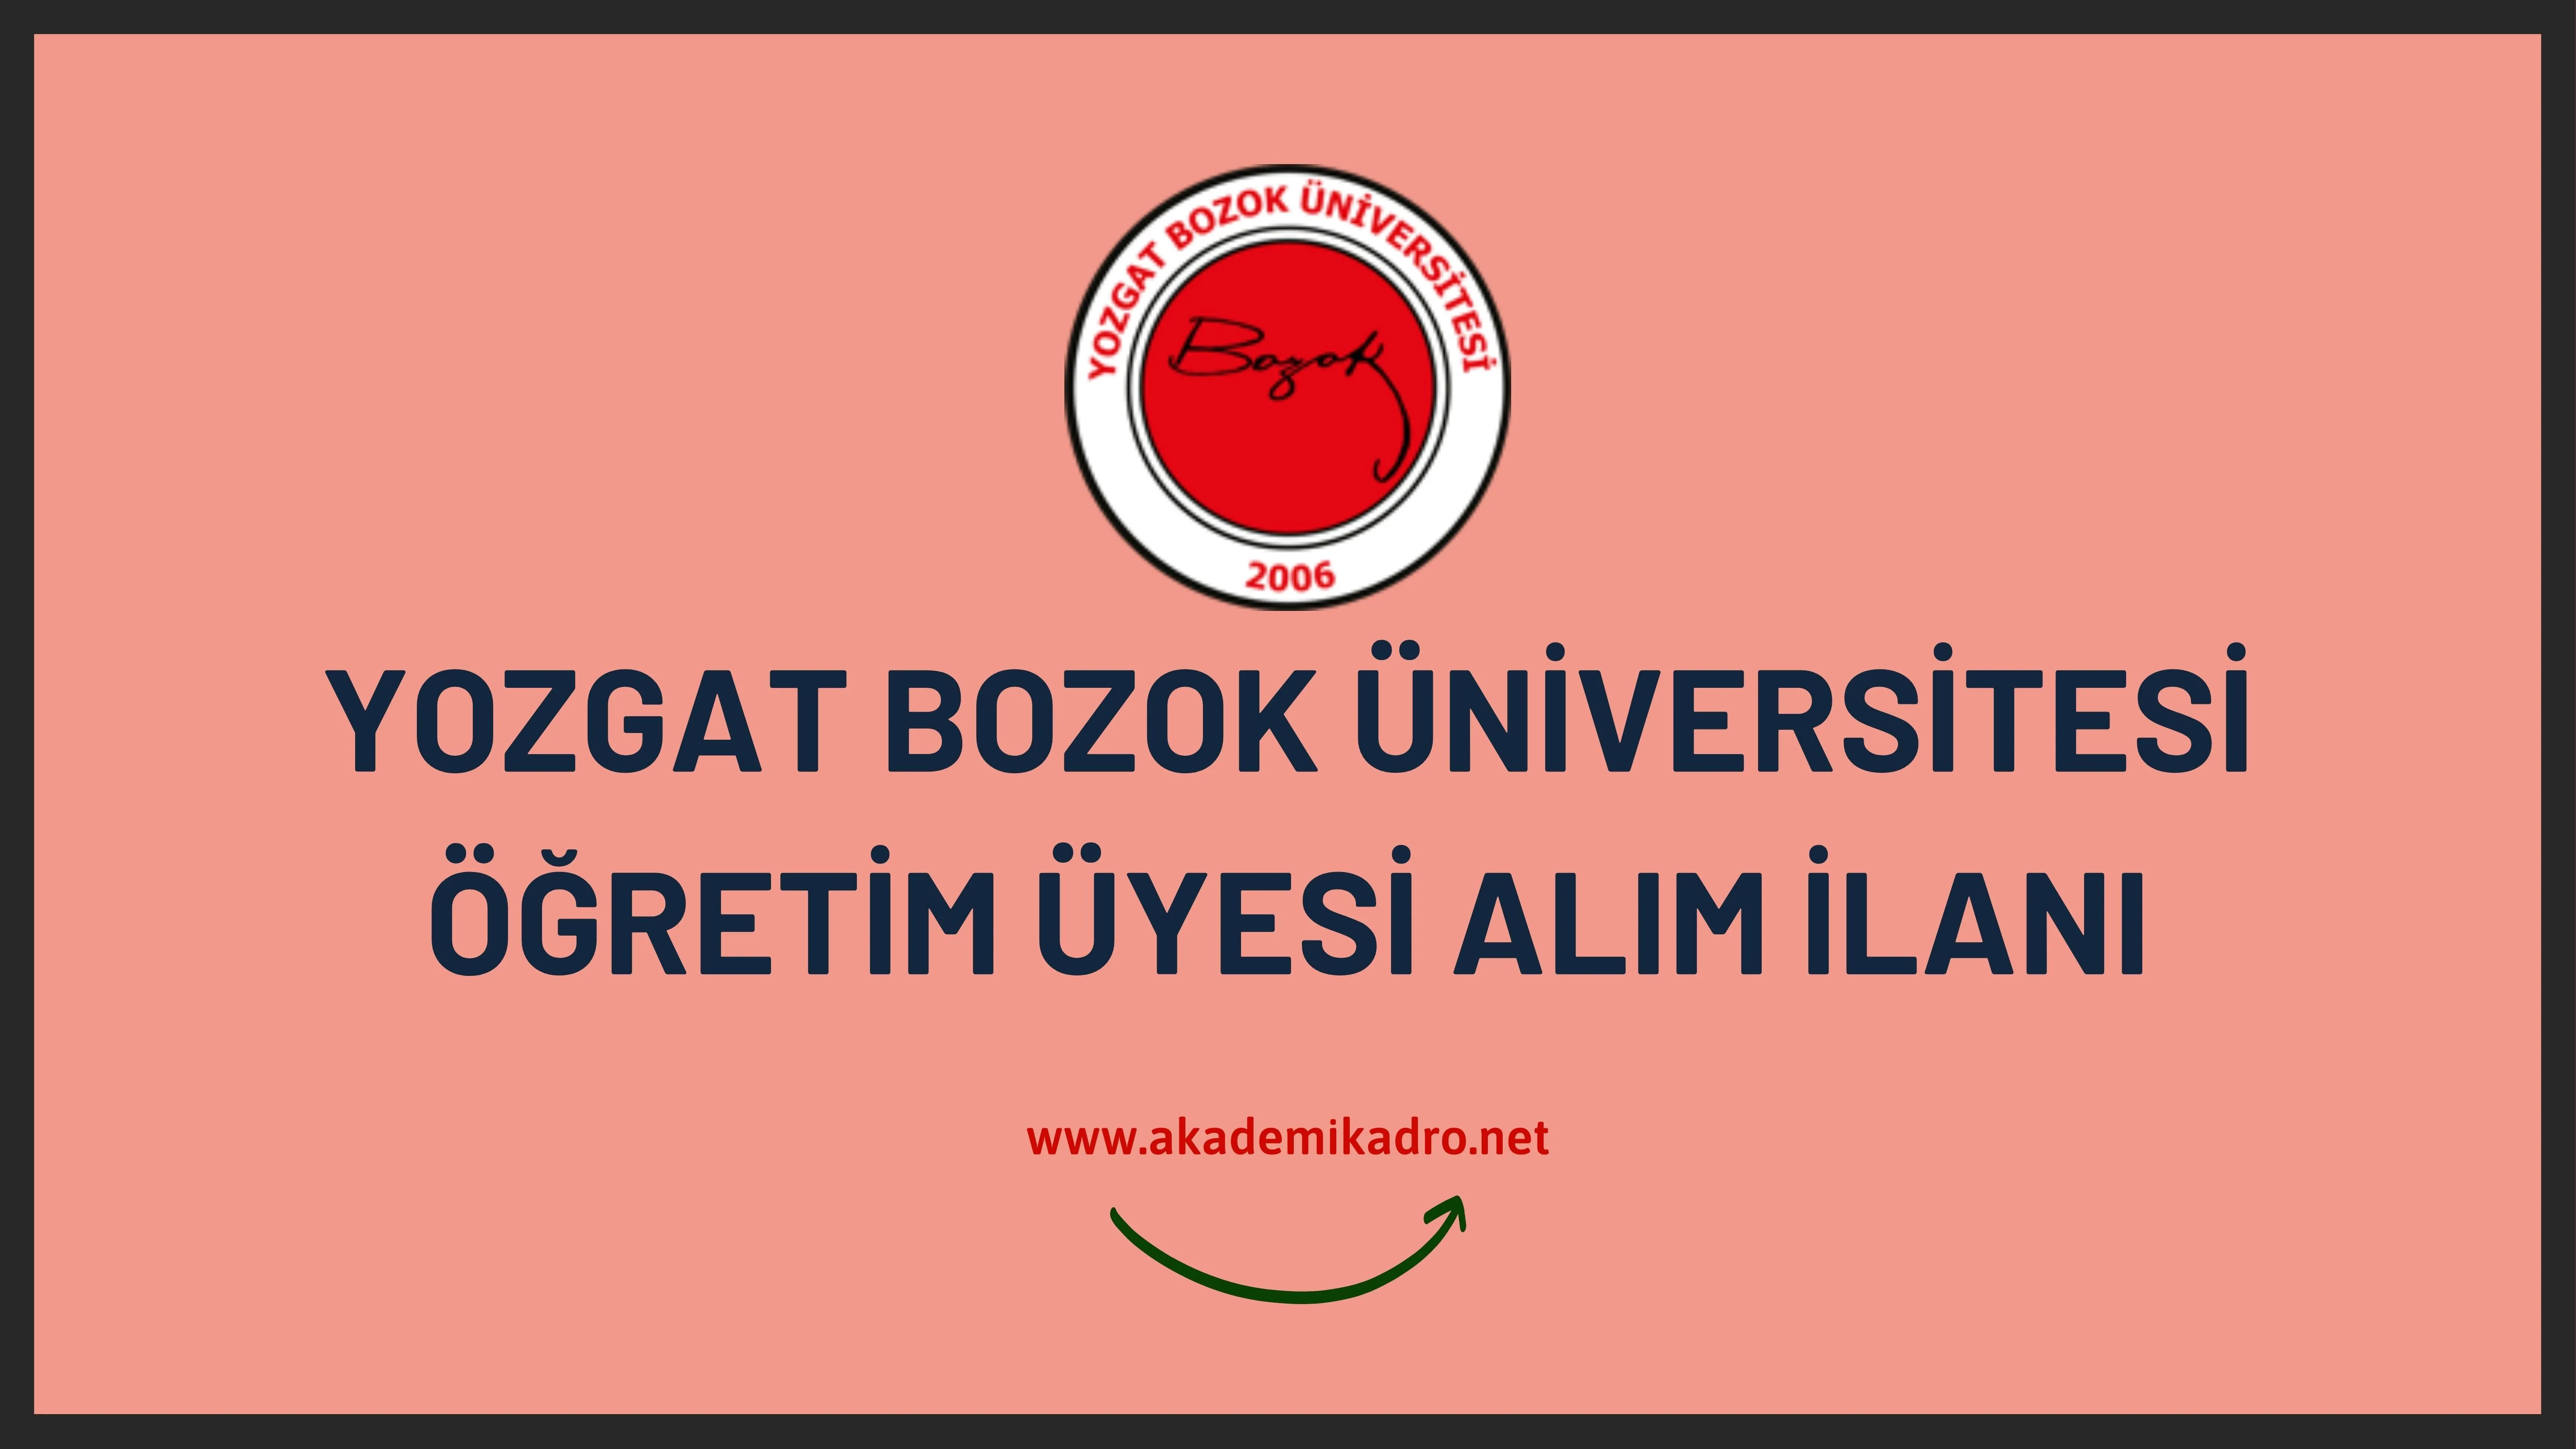 Yozgat Bozok Üniversitesi 4 akademik personel alacak